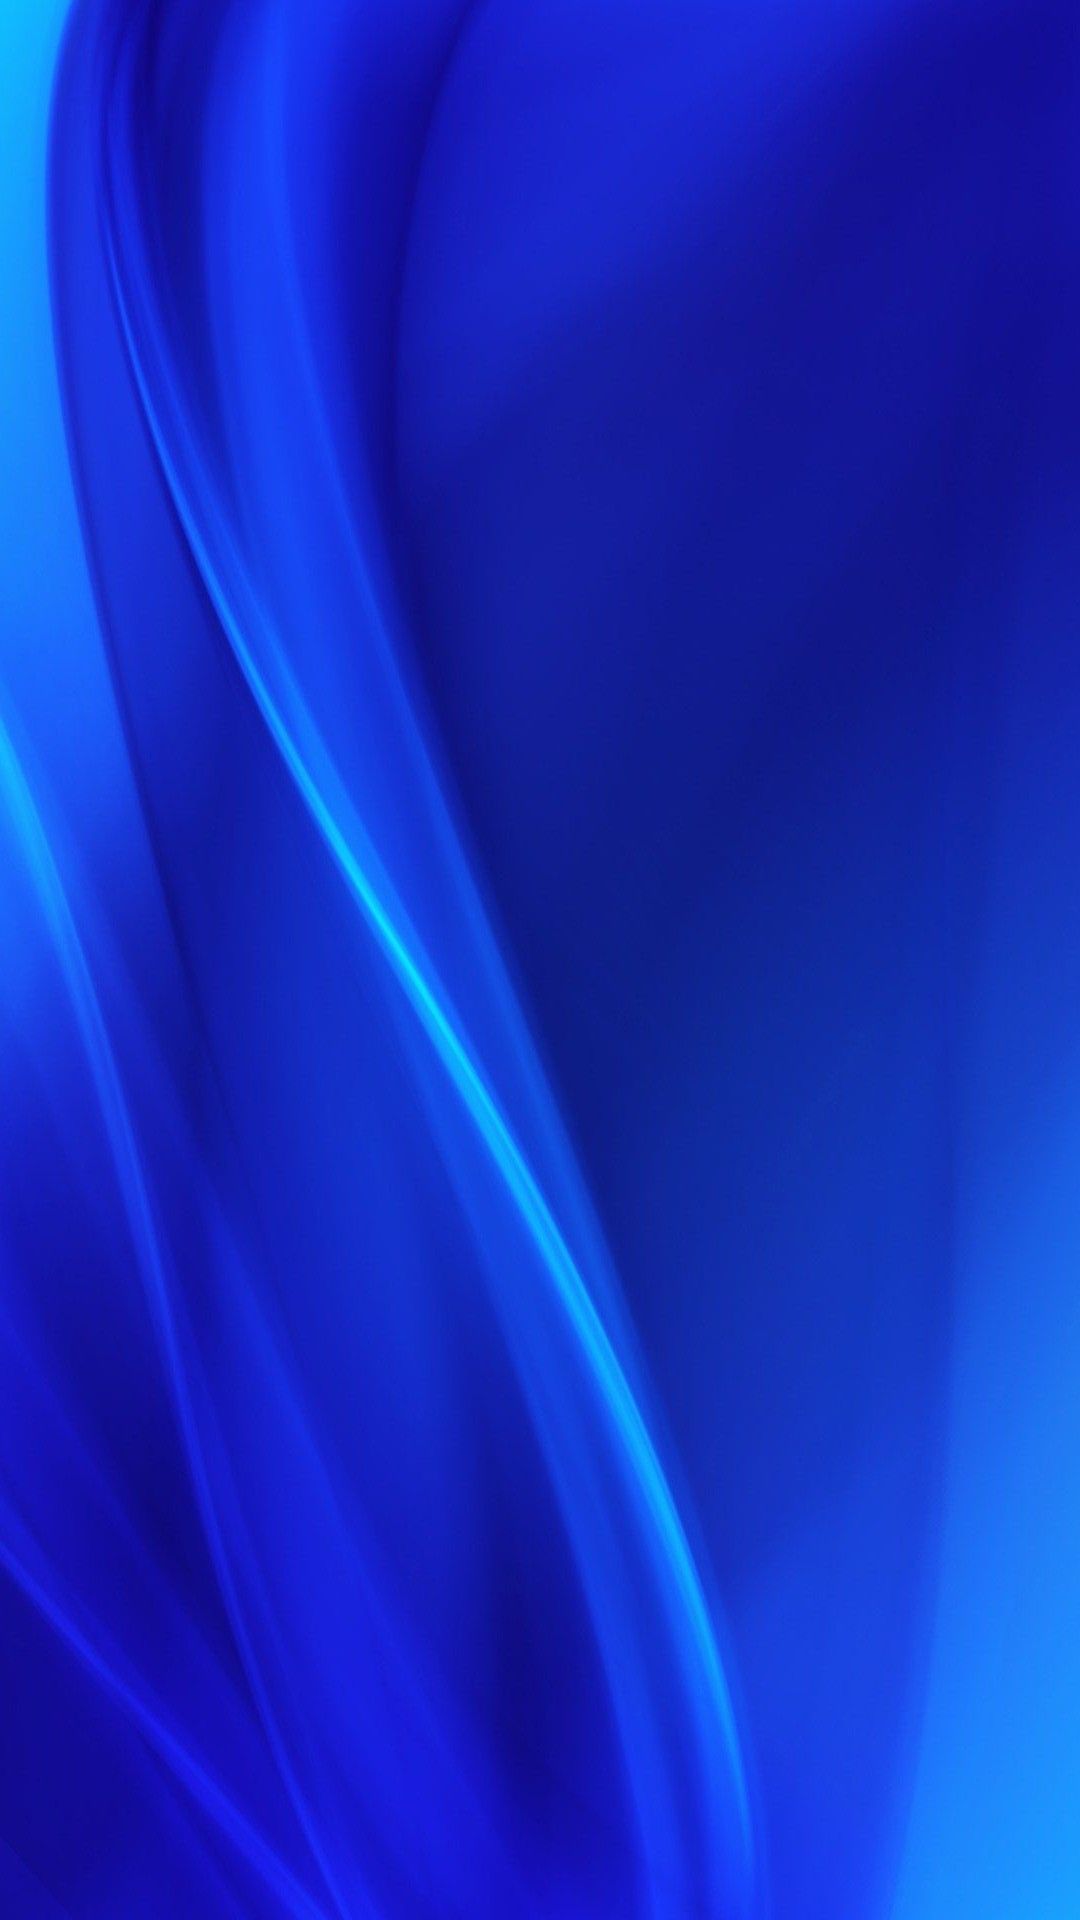 Dark blue wallpaper iphone d iphone wallpaper blue wallpapers blue wallpaper iphone dark blue wallpaper